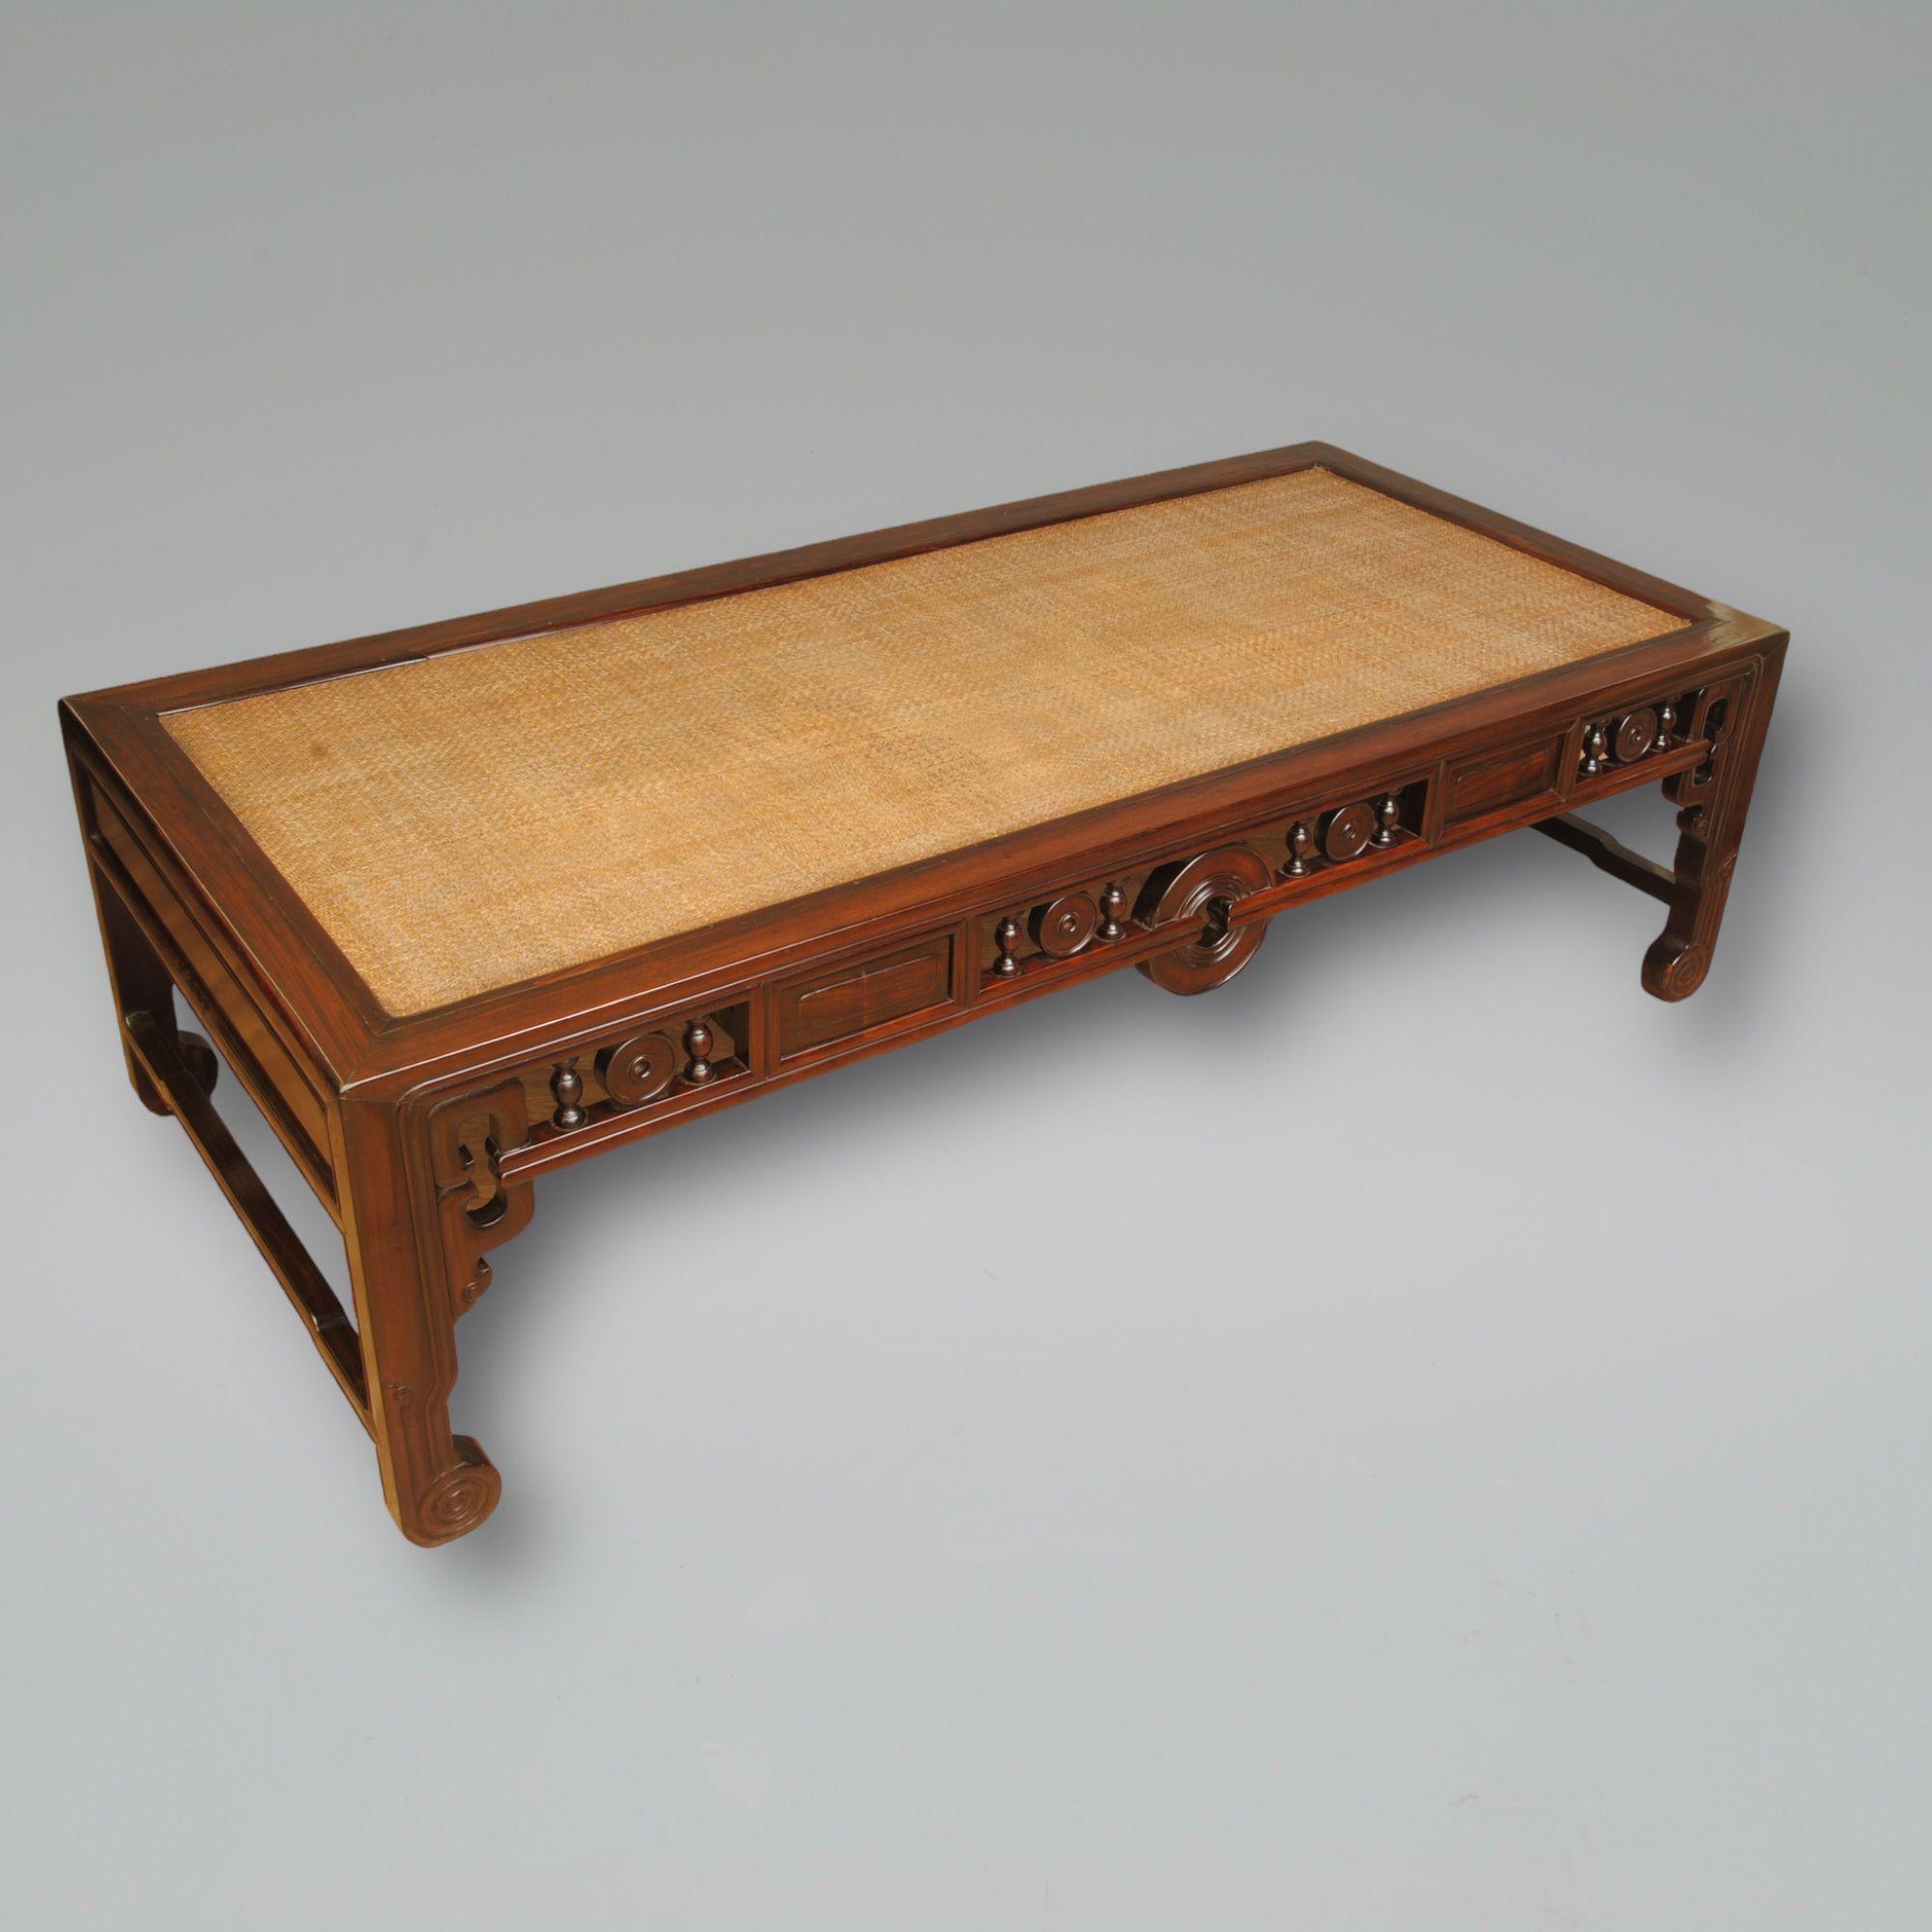 Ein toll aussehender niedriger Tisch oder eine Liege aus chinesischem Hartholz, der sich auch als großer Couchtisch eignet. Die Rattanplatte ist in gutem Originalzustand und die Farbe und Patina des Holzes ist sehr schön.